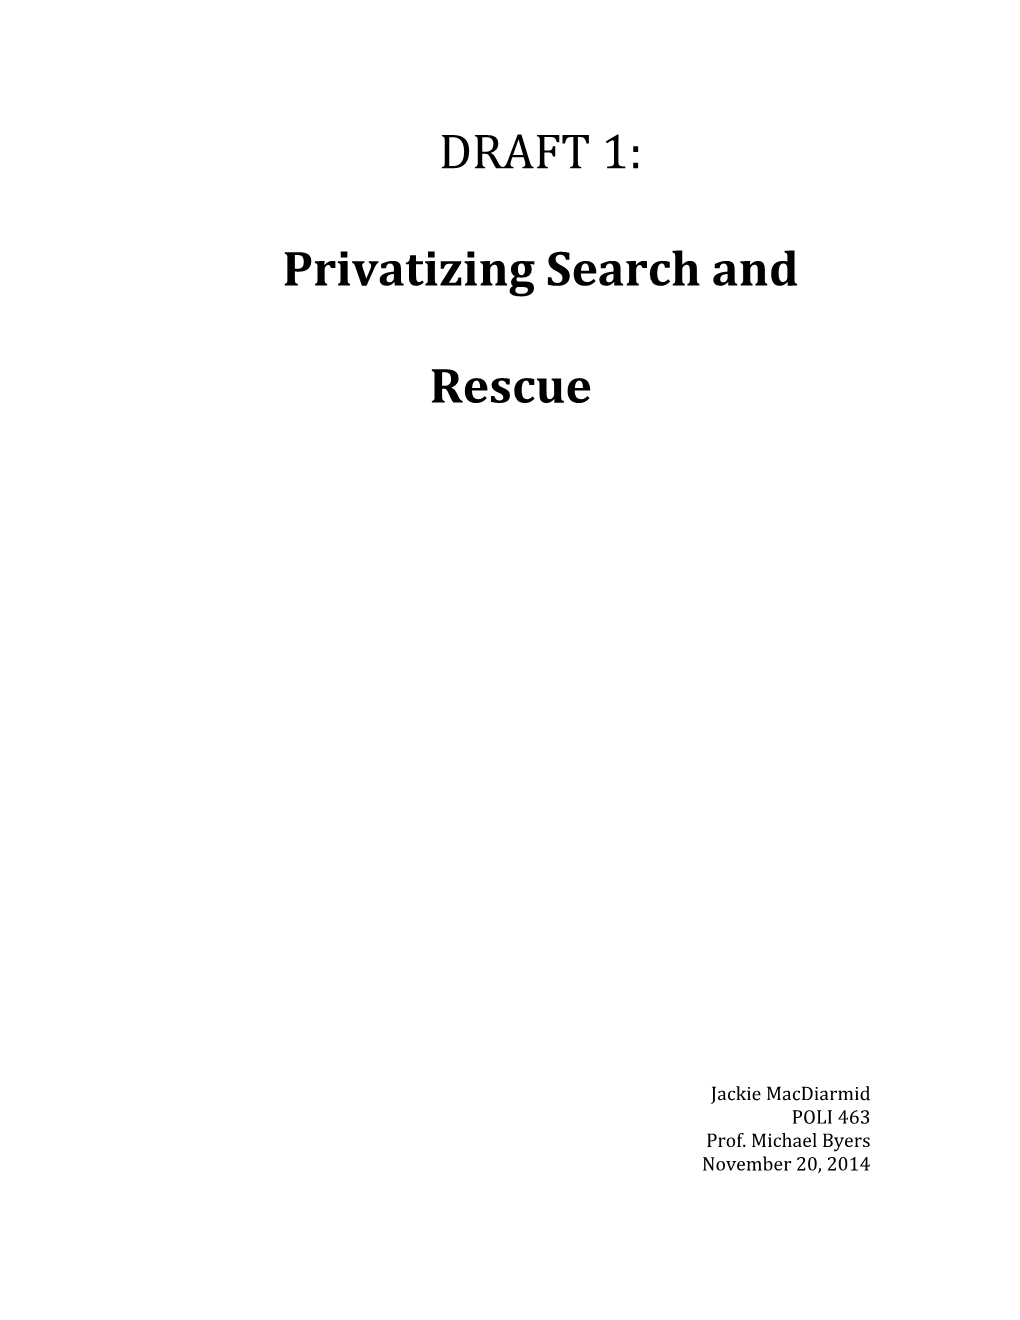 Privatizing Search and Rescue